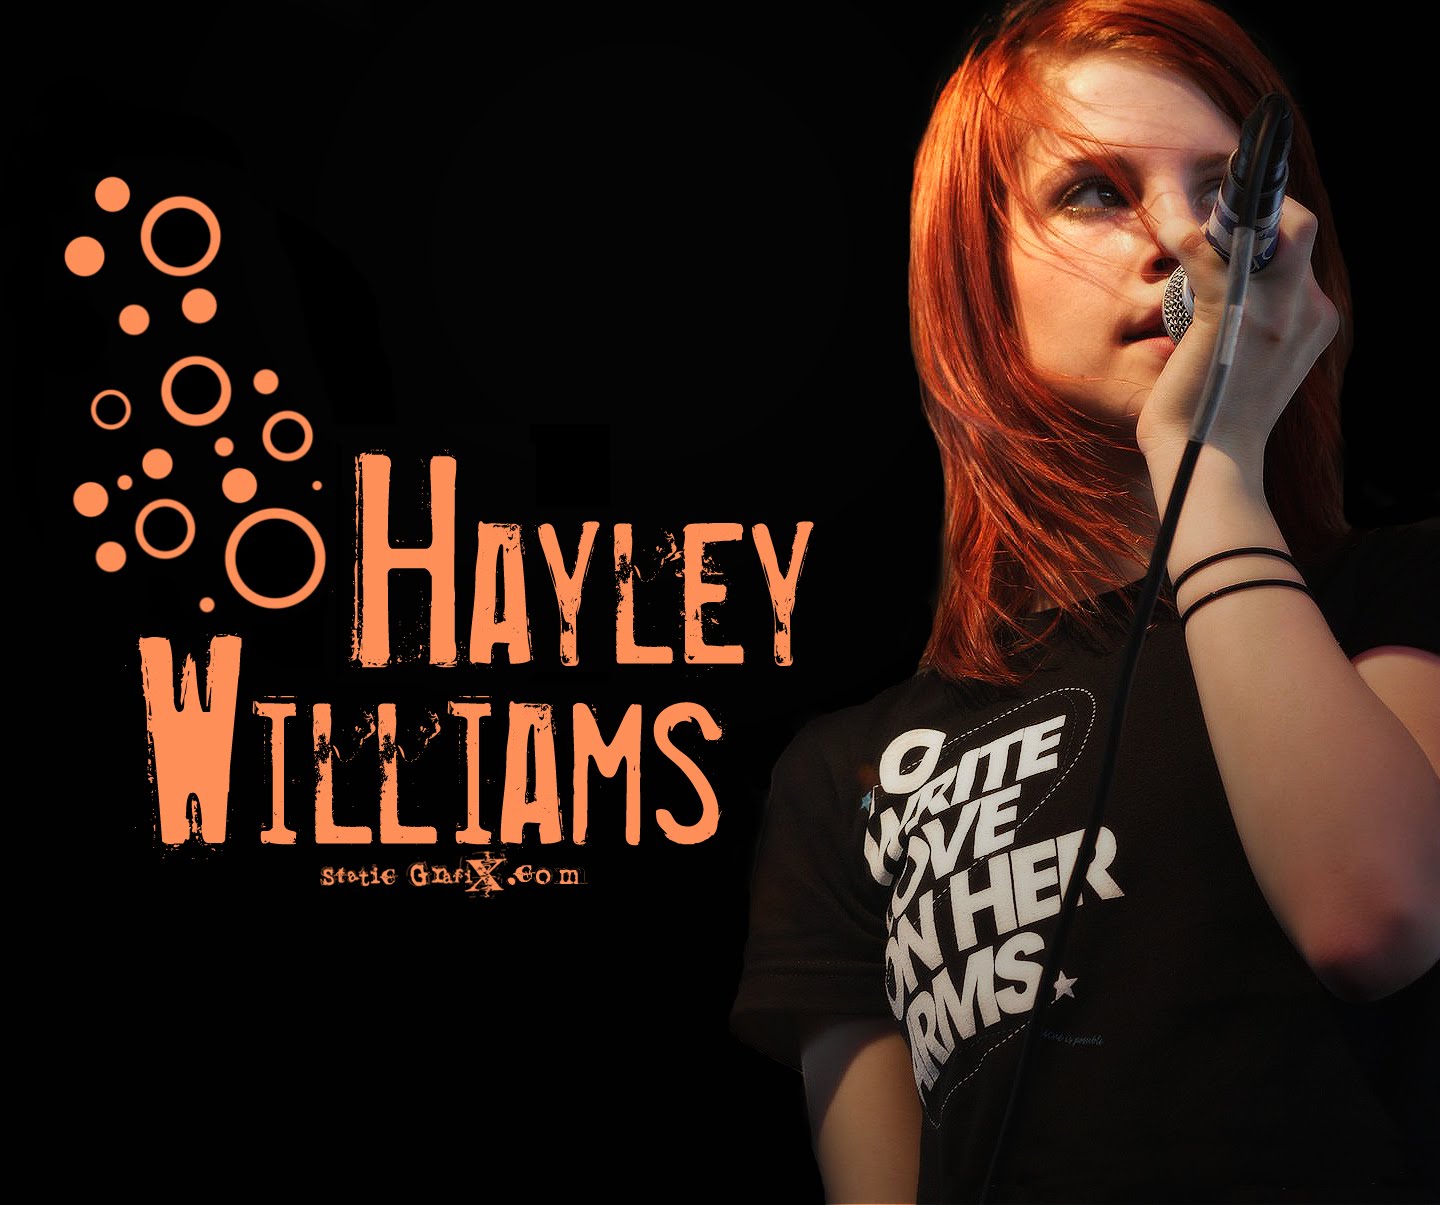 Hayley+williams+wallpaper